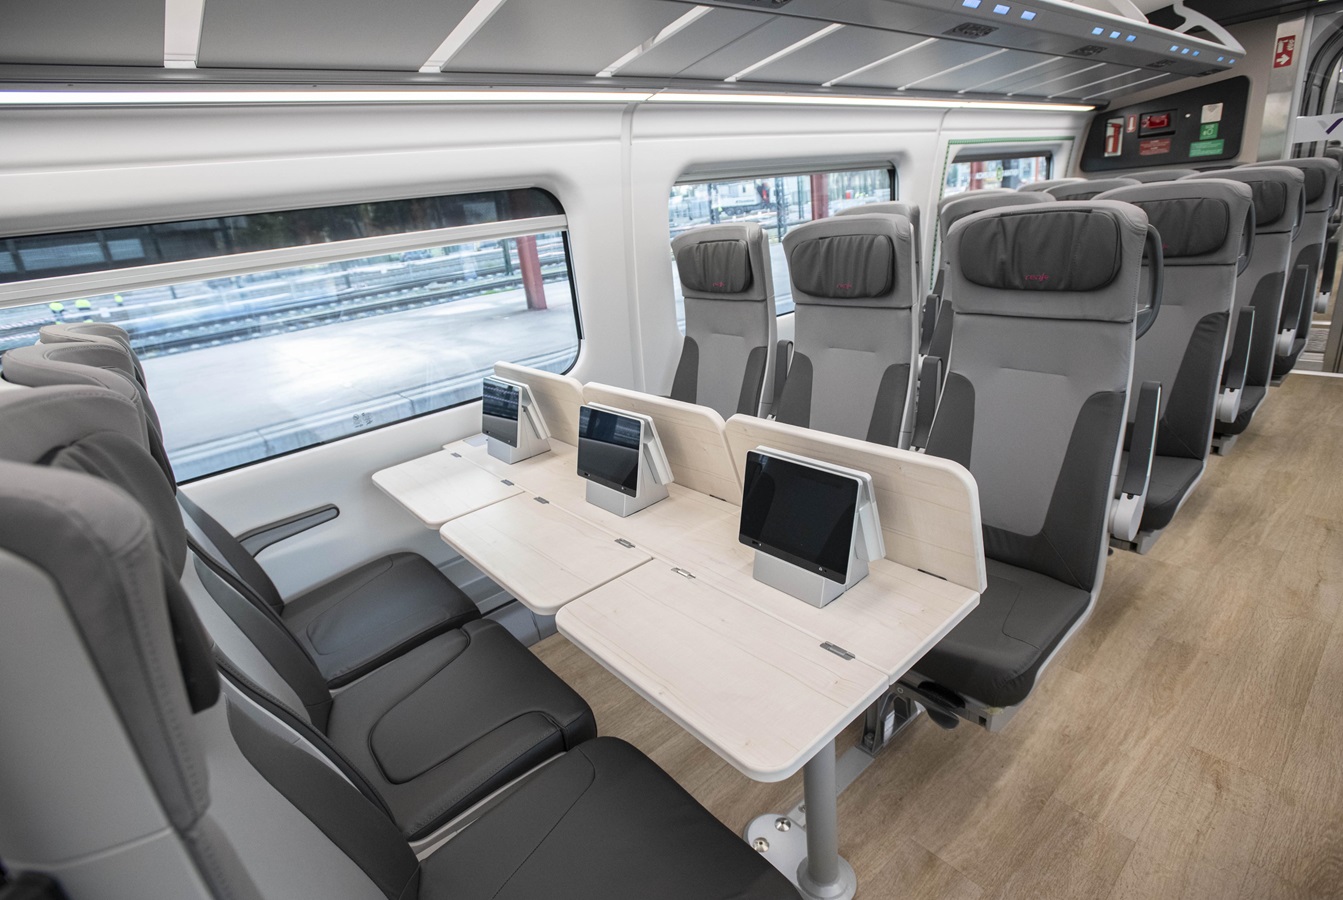 Renfe : des écrans tactiles pour tous les voyageurs, grâce à ces nouveaux trains S106 - DR